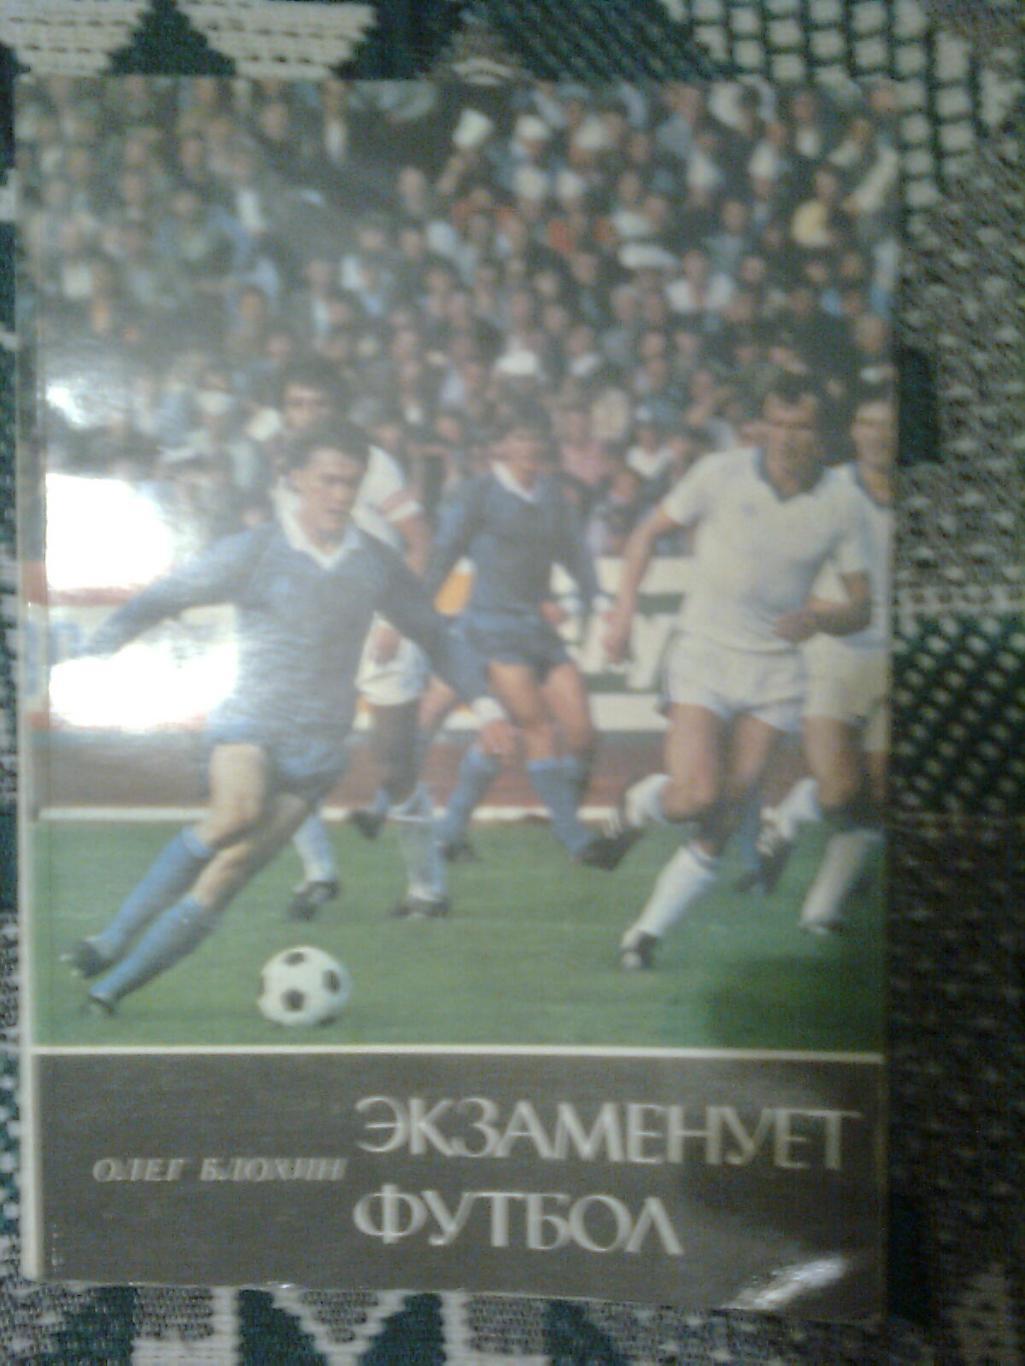 Экзаменует футболОлег Блохин.1986 г. Киев.